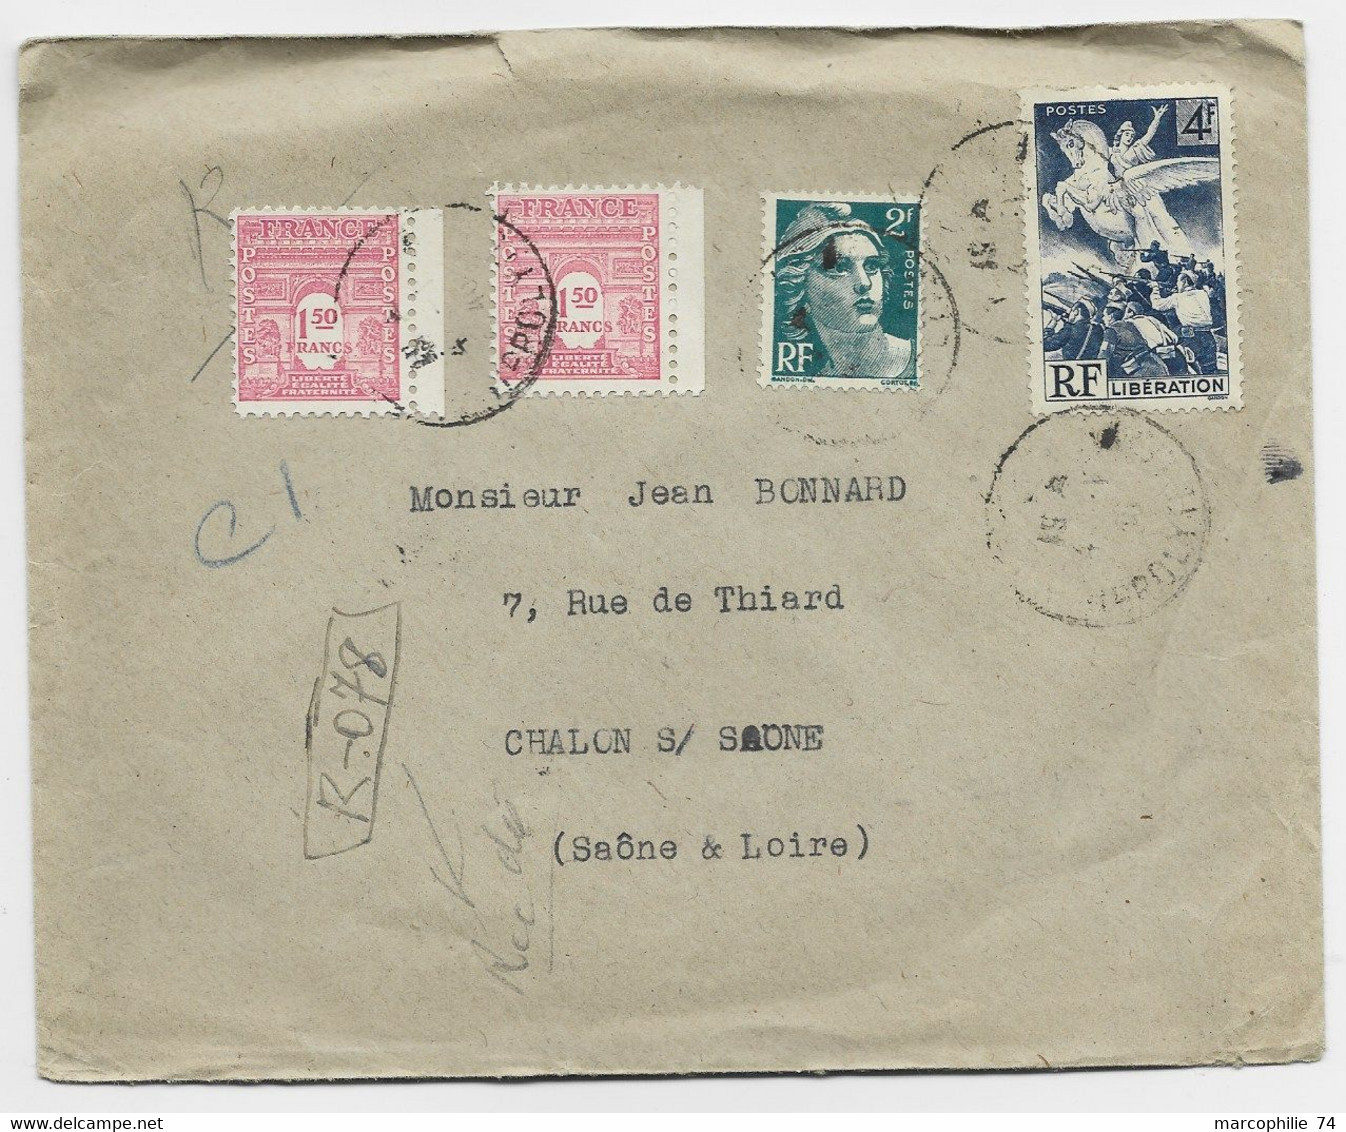 FRANCE ARC TRIOMPHE 1FR50 ROSEX2+ GANDON 2FR+ 4FR LIBERATION LETTRE REC PROVISOIRE PARIS 1946 AU TARIF - 1944-45 Arco Di Trionfo